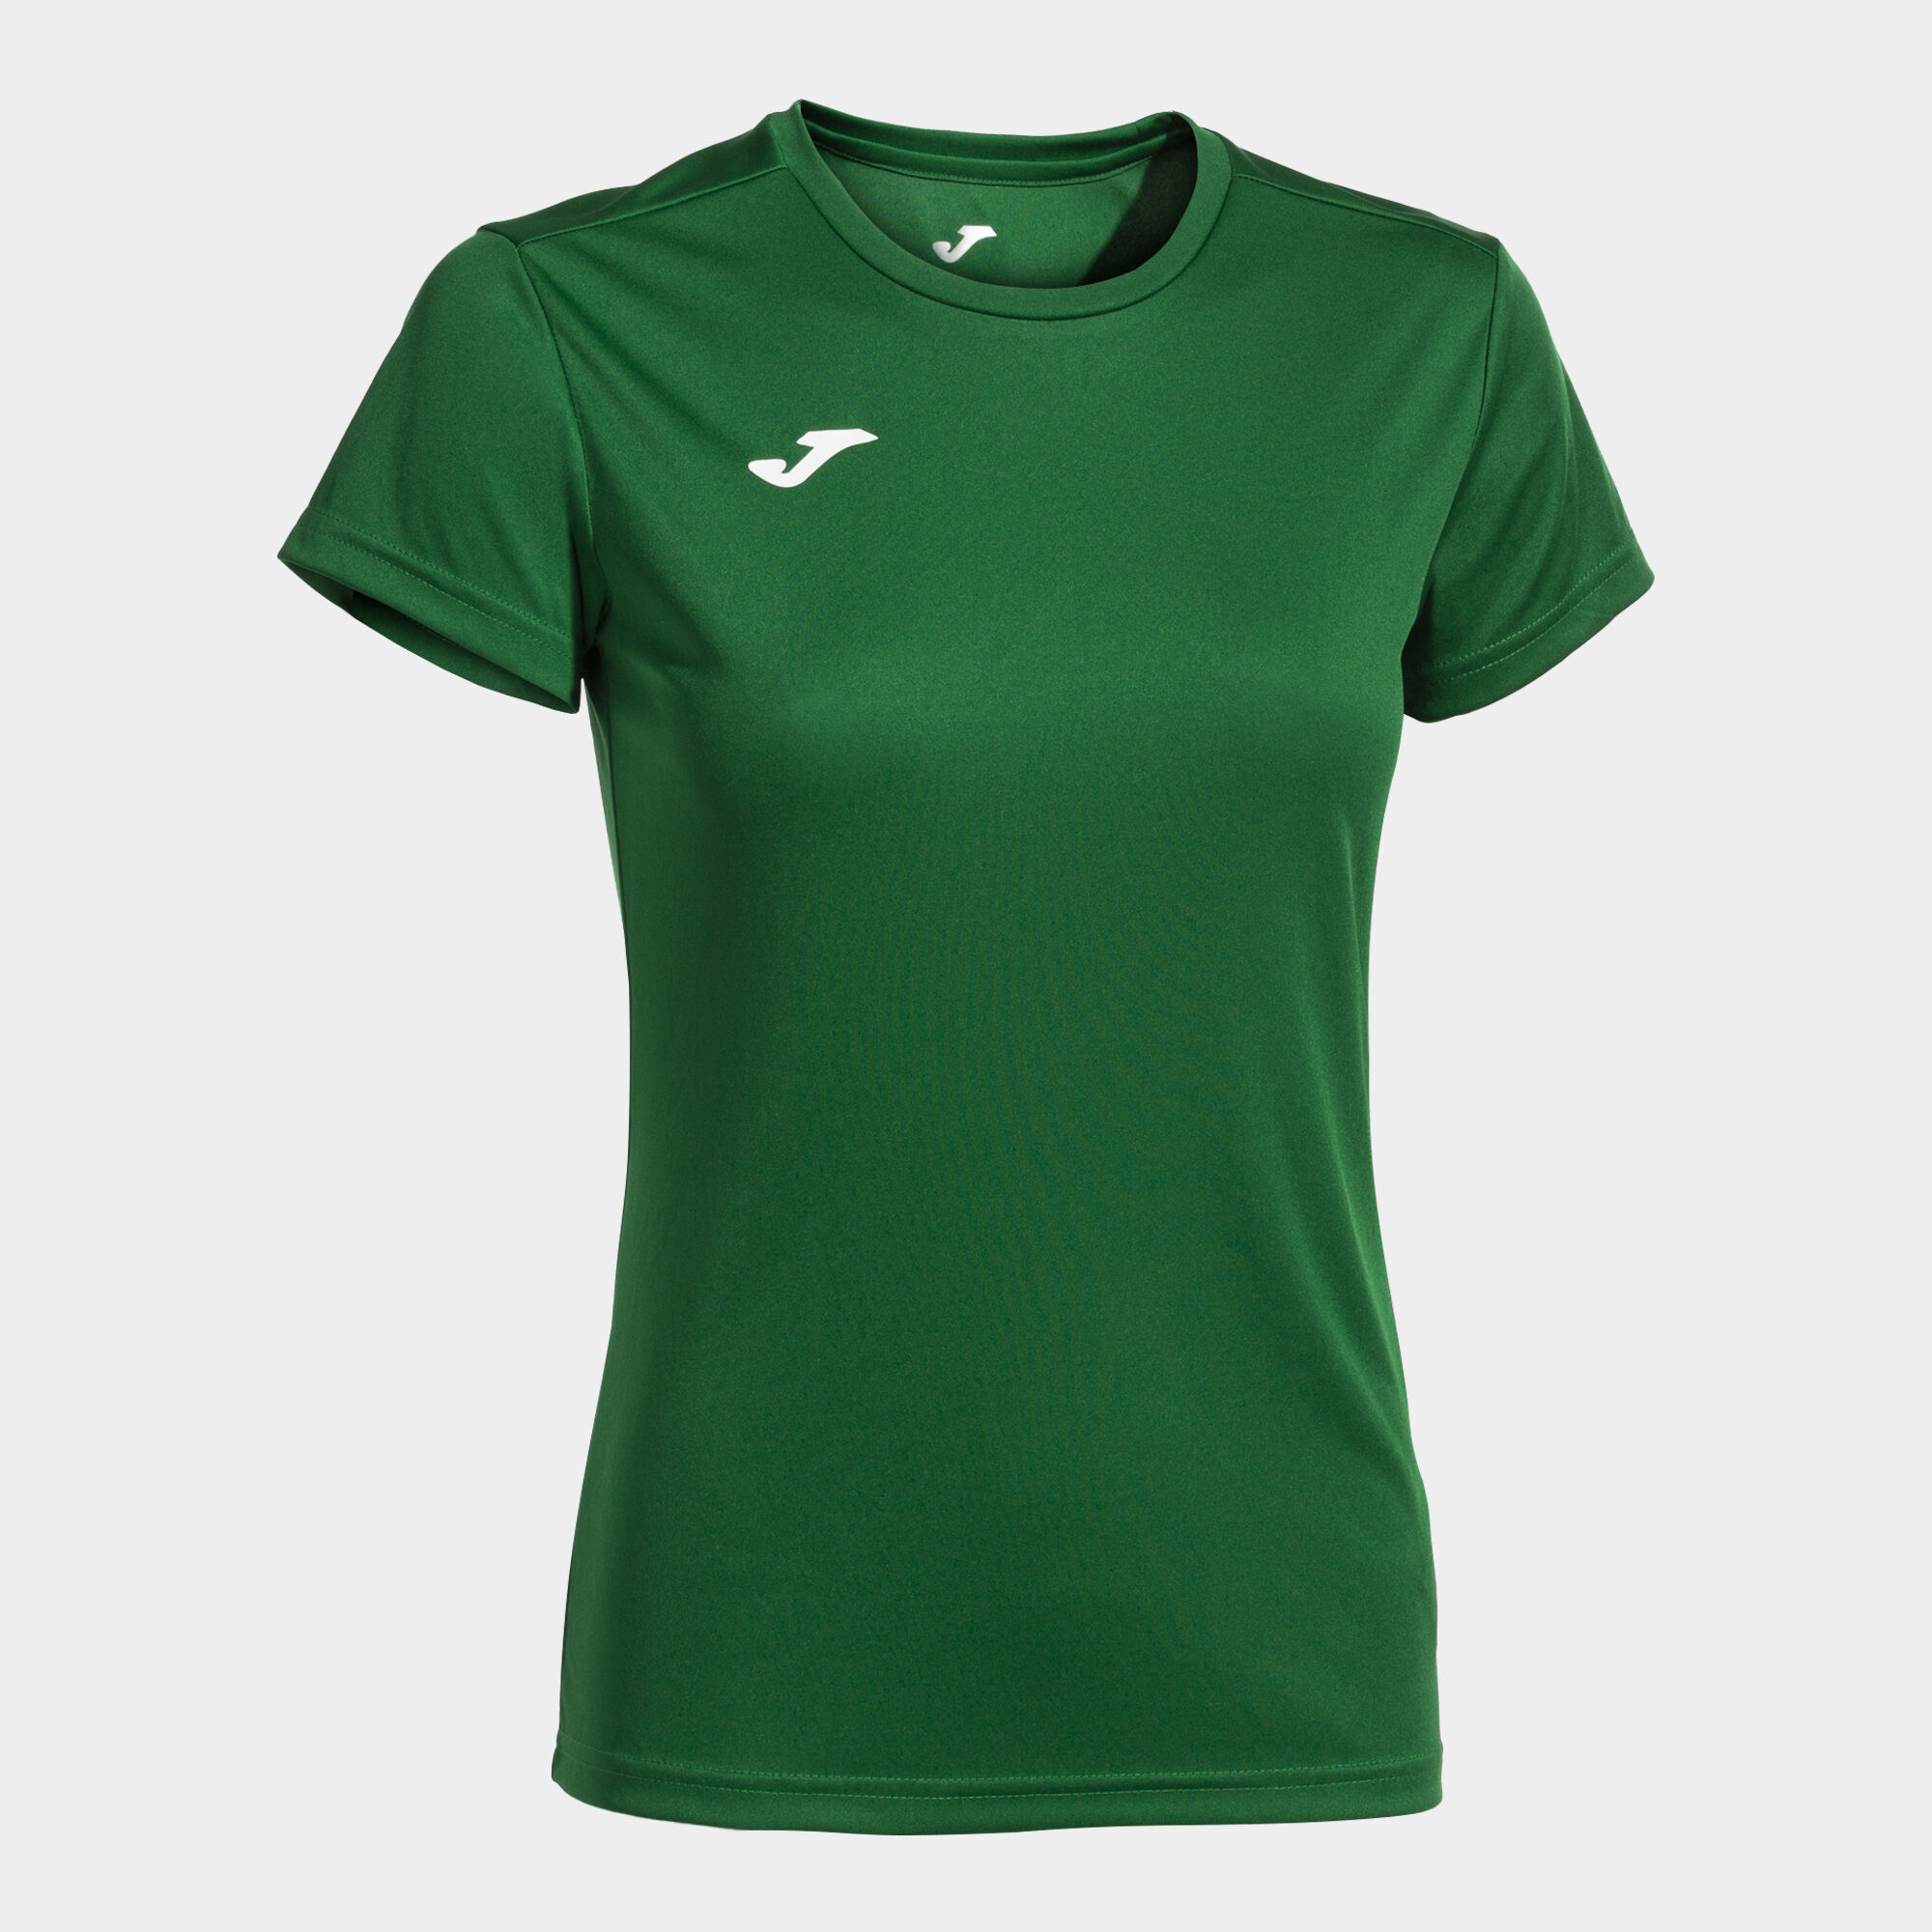 Shirt short sleeve woman Combi green